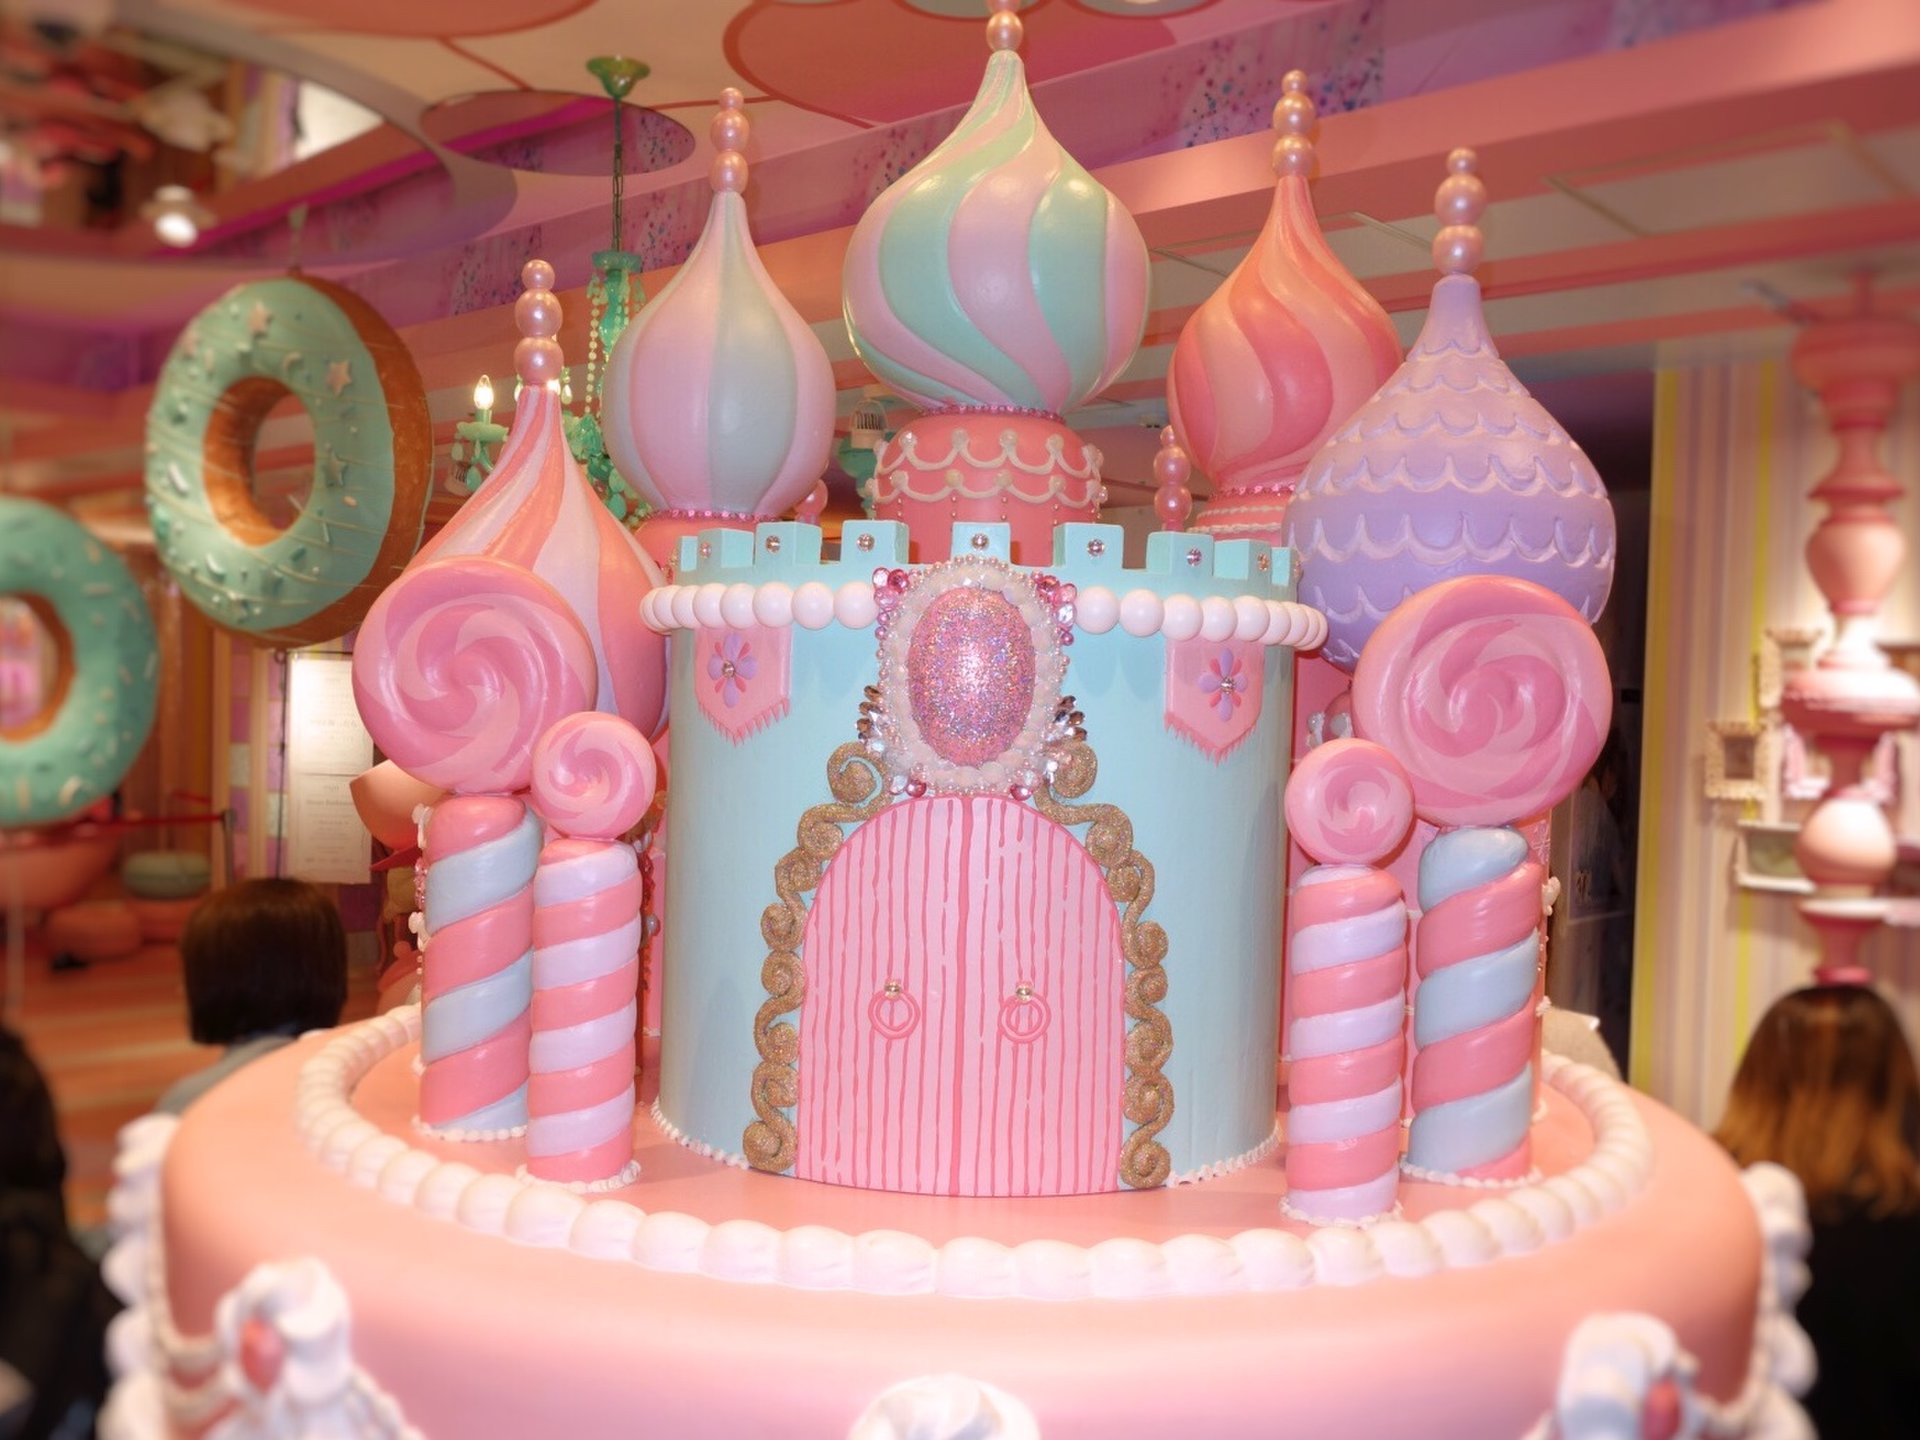 渋谷109で世界一かわいいプリのお店 フォトジェニックなお菓子の国を